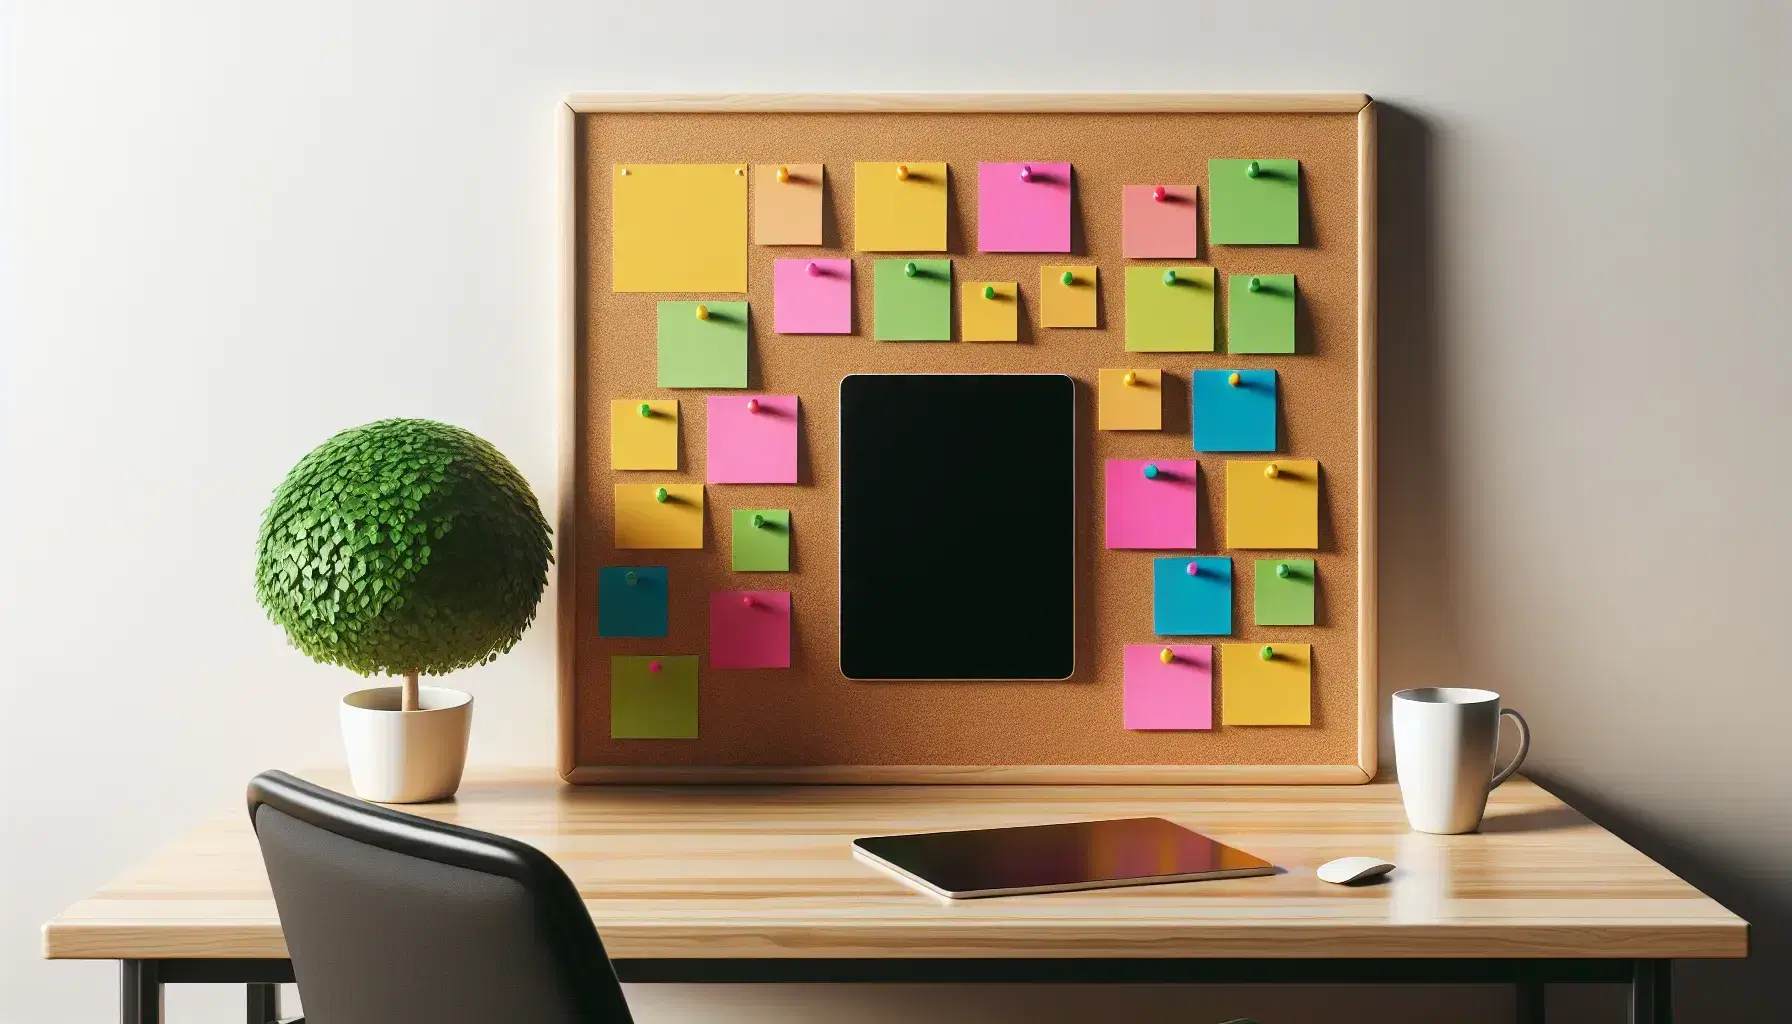 Escritorio de oficina con corcho y notas adhesivas coloridas, taza de café, tableta electrónica y planta, silla de oficina al fondo.